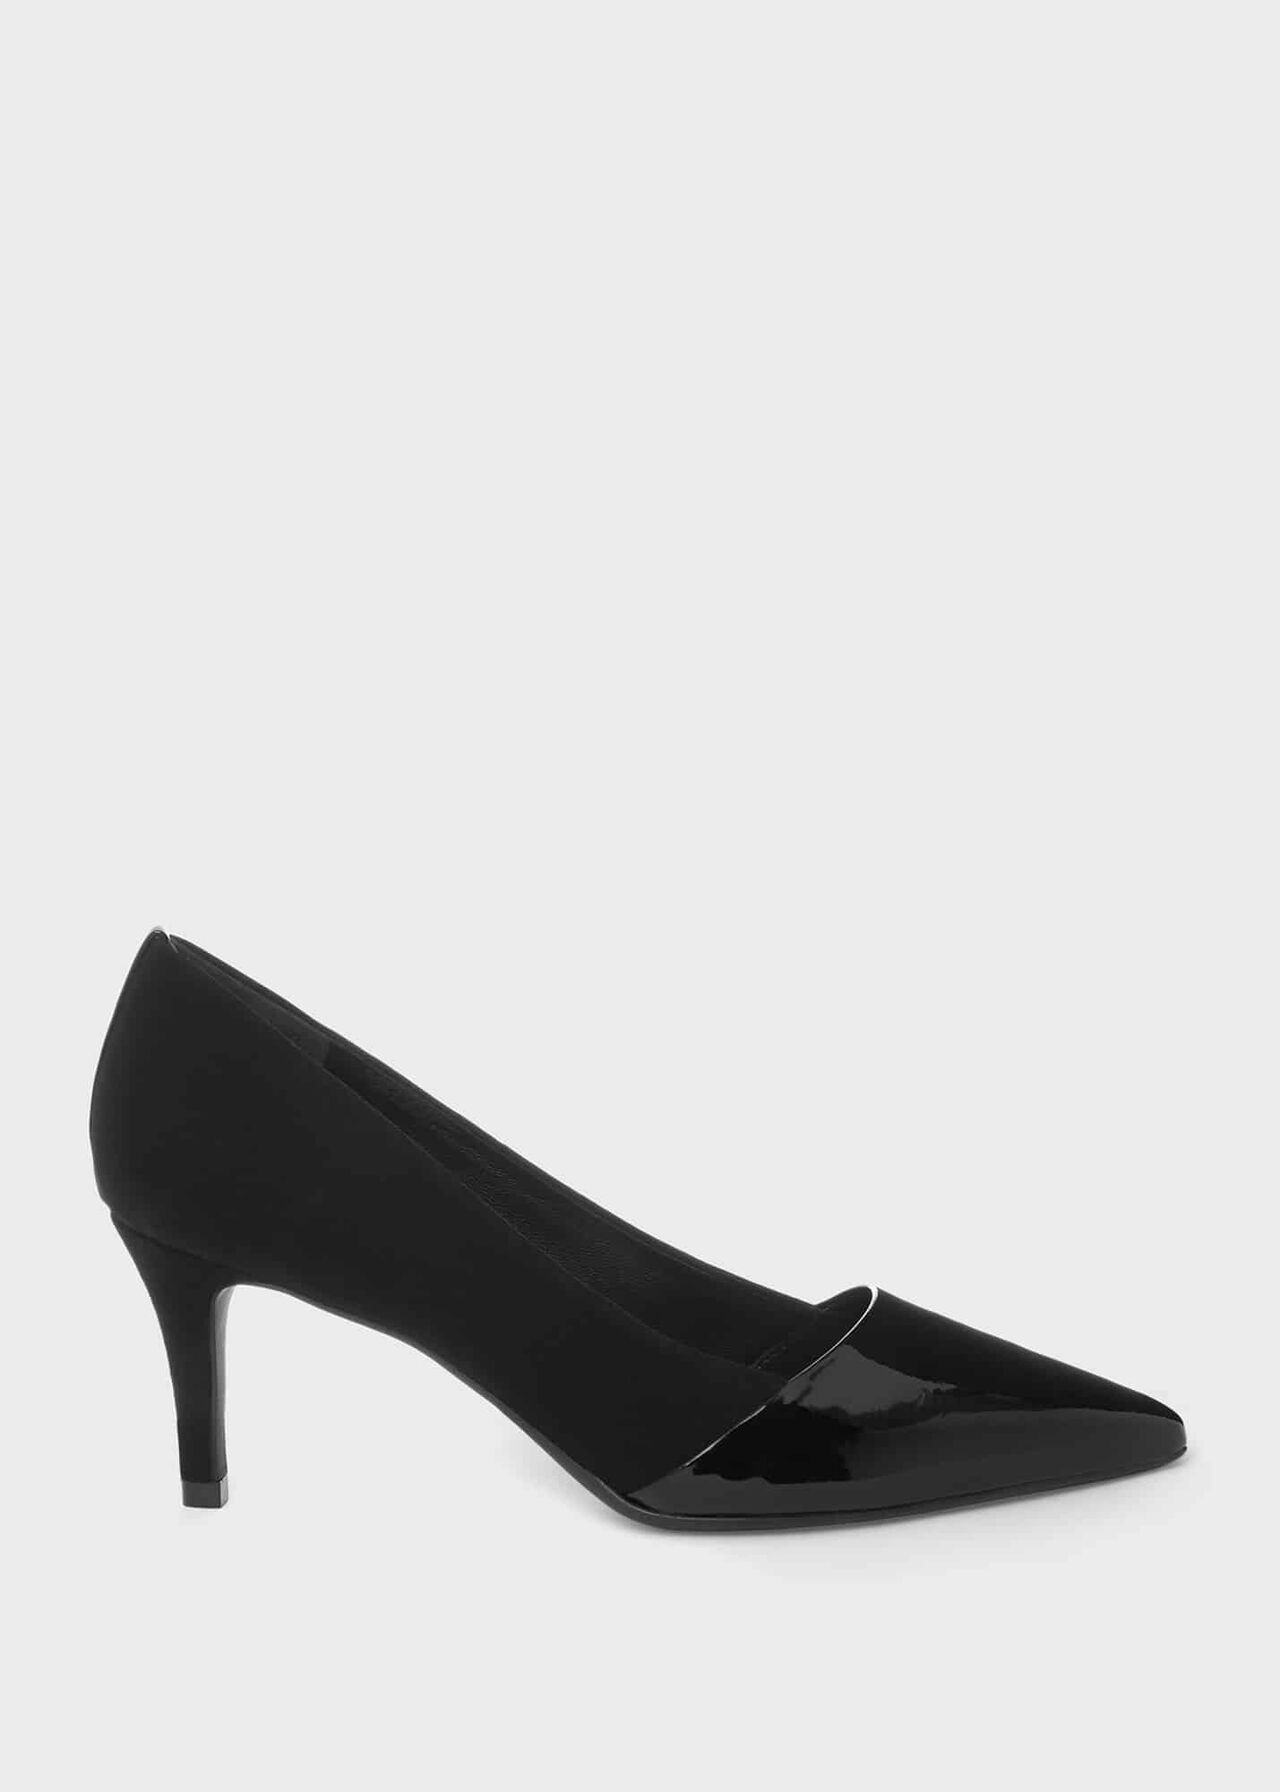 Rowan Suede Court Shoes, Black, hi-res